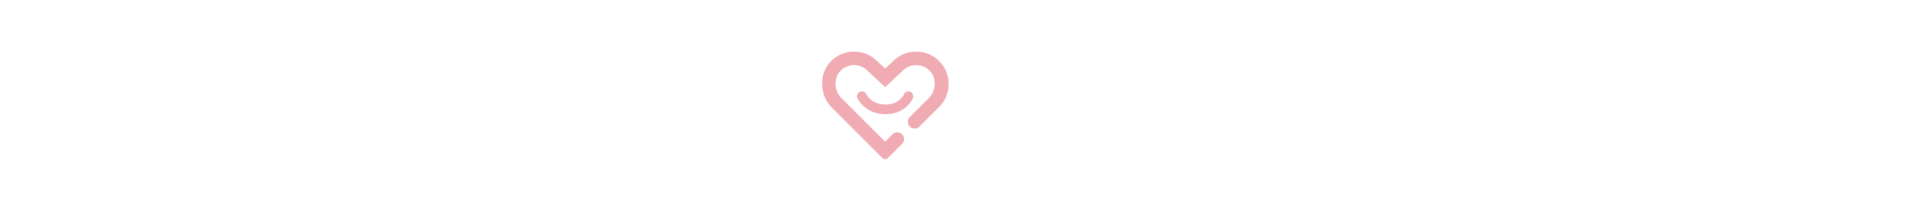 Simple Mental Health Logo - White No Tag